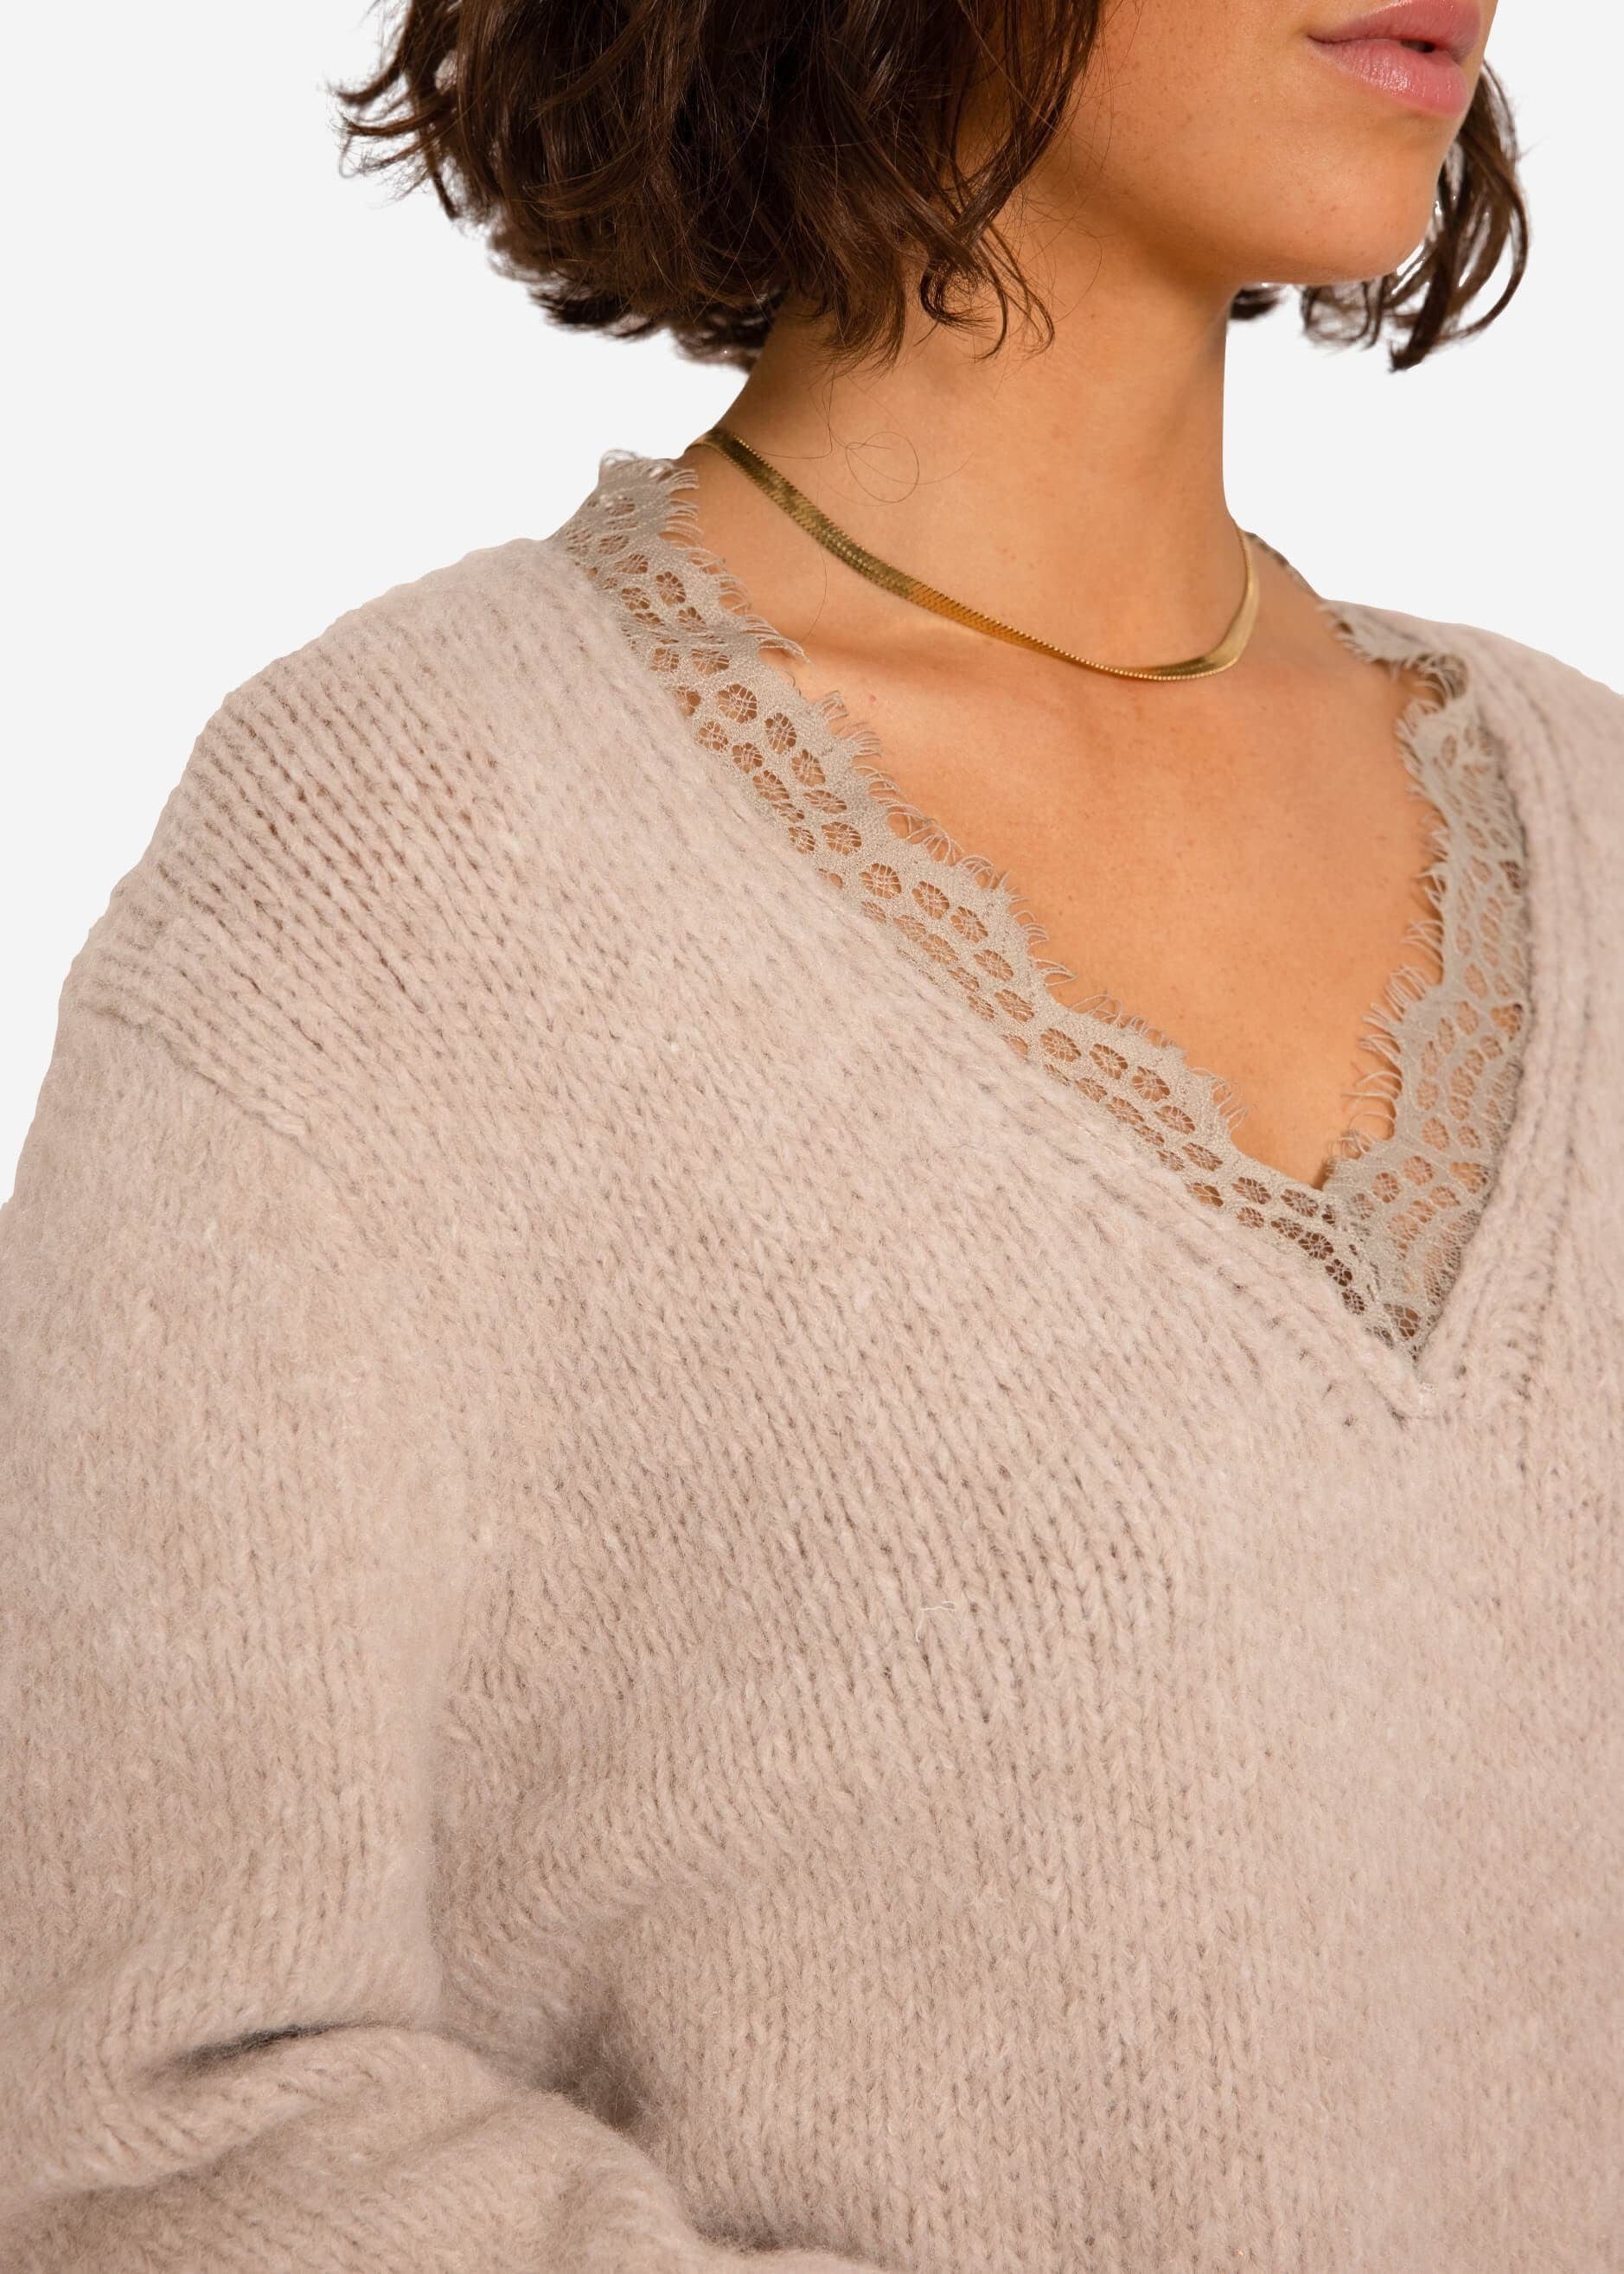 Strickpullover SASSYCLASSY Beige mit Strickpullover aus Spitzen-Ausschnitt Lässiger Oversize weichem Damen Pullover Grobstrick